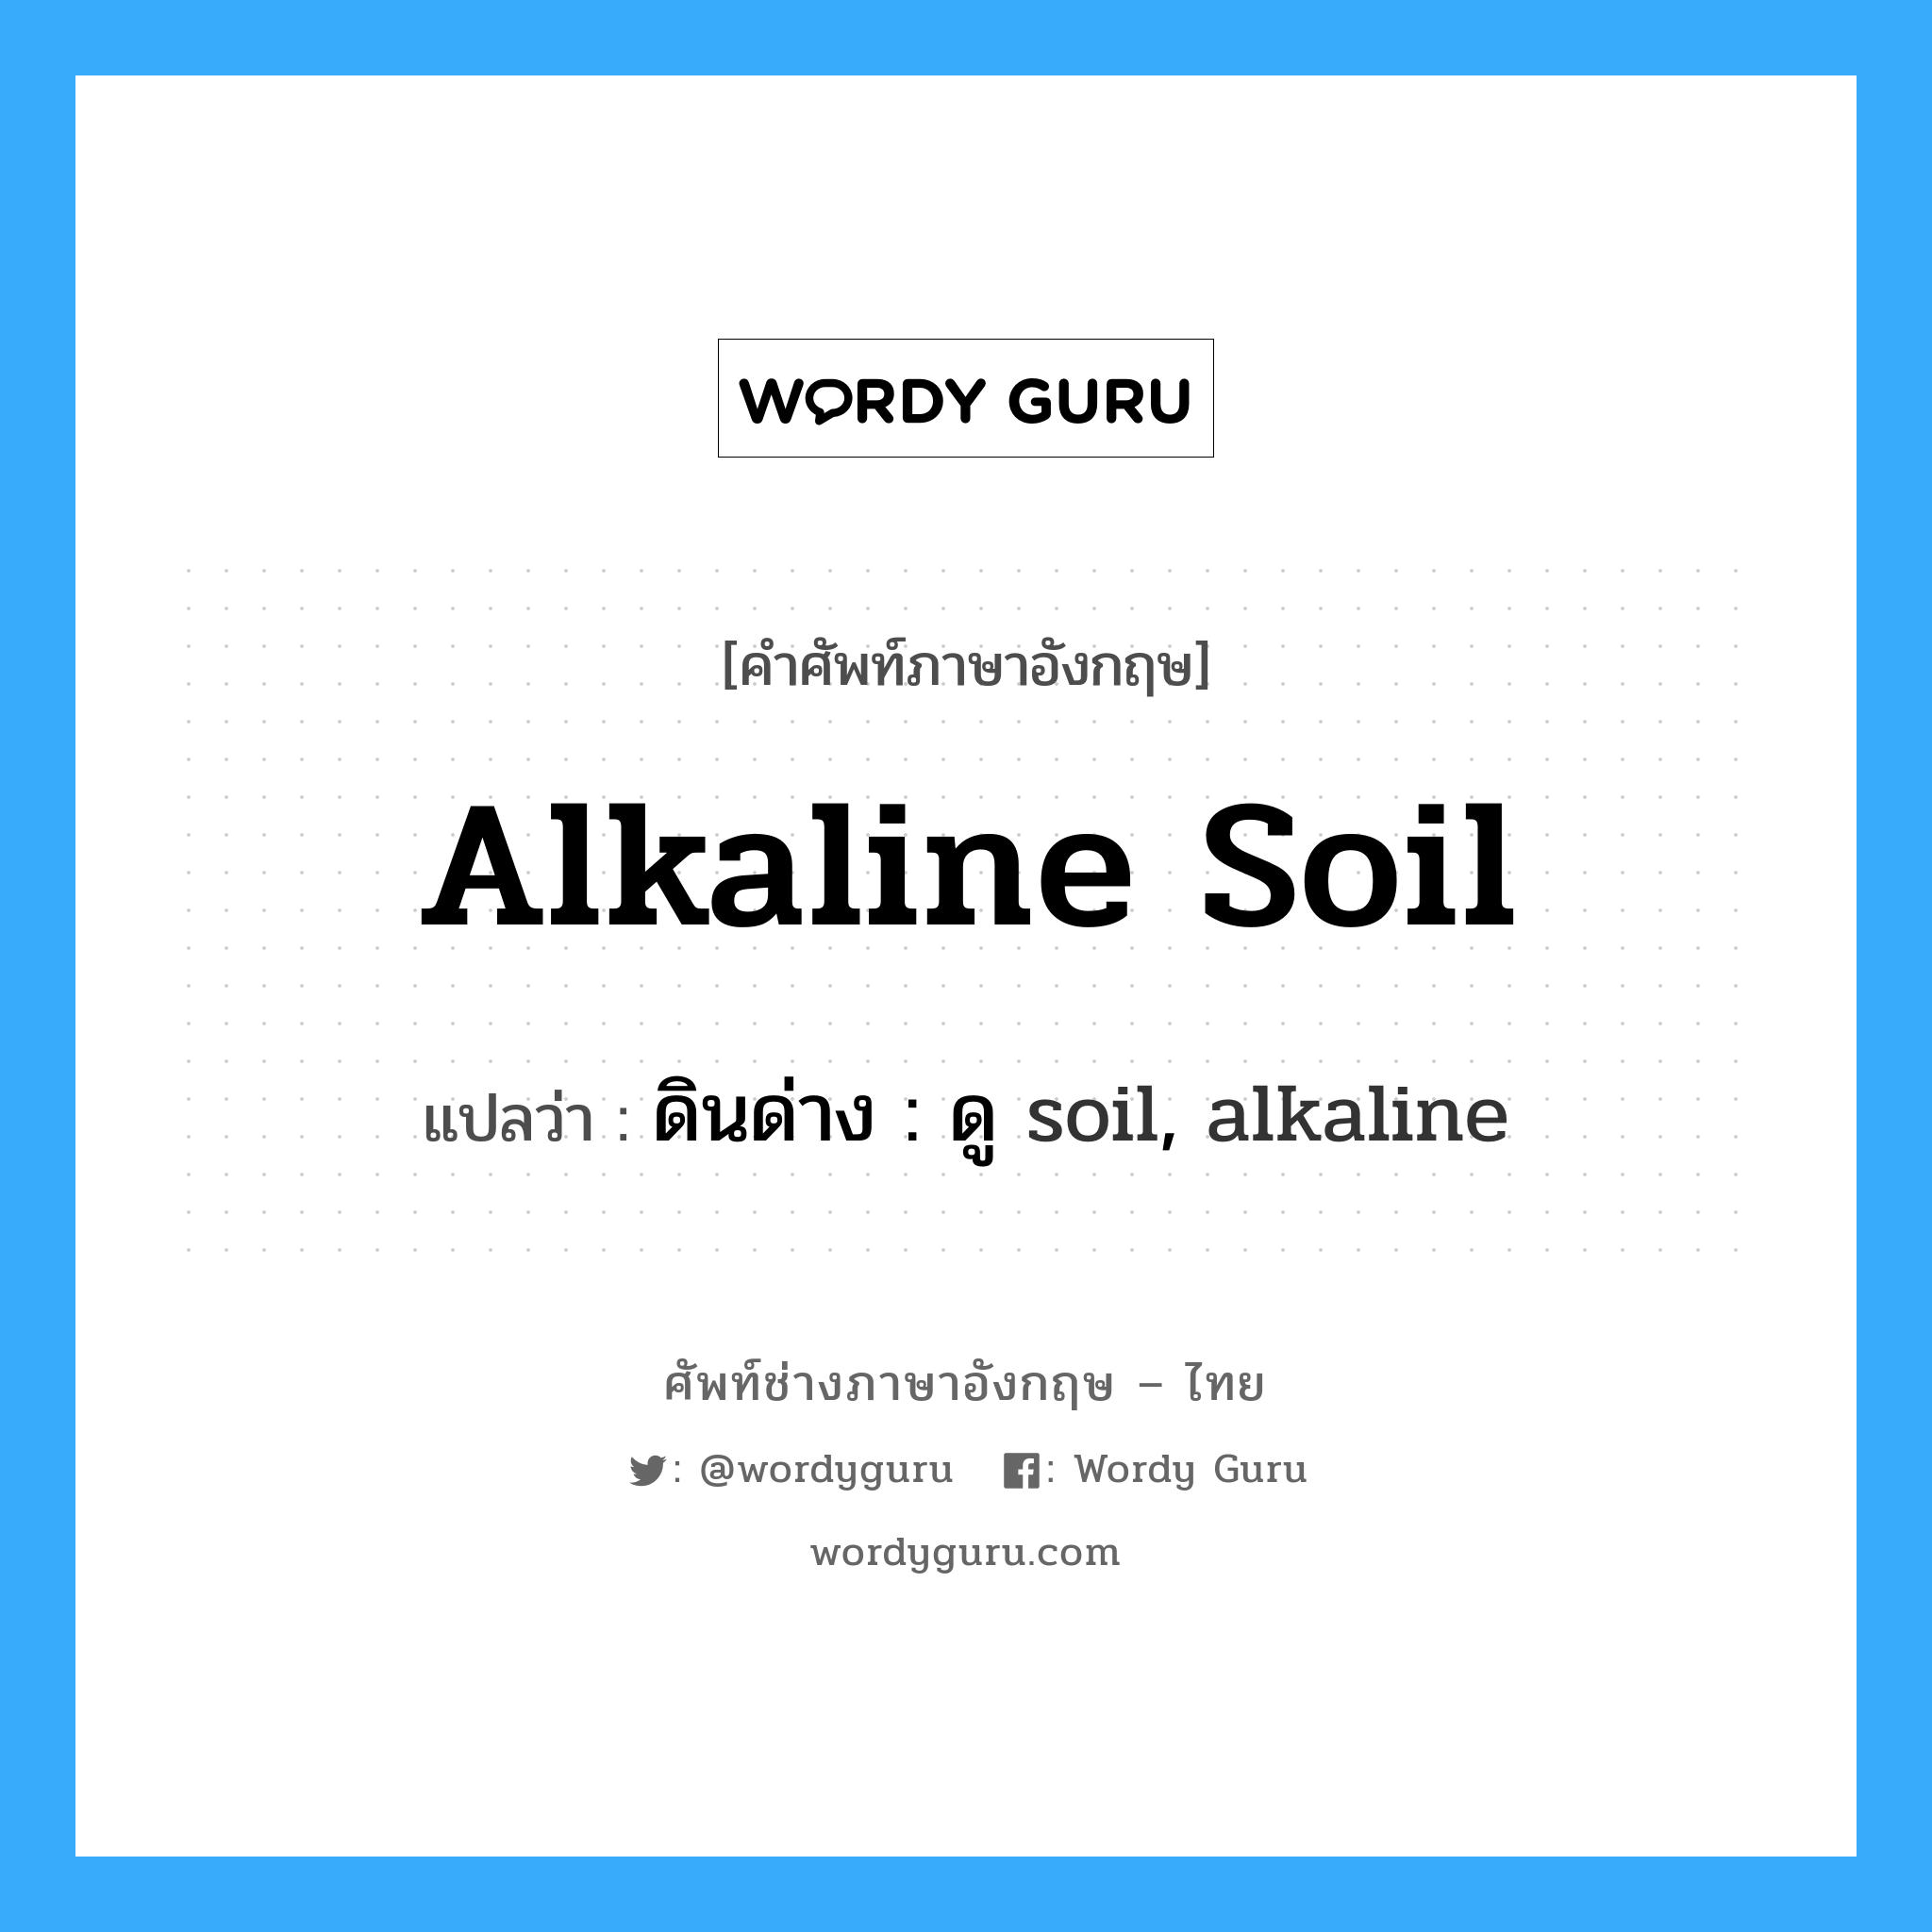 ดินด่าง : ดู soil, alkaline ภาษาอังกฤษ?, คำศัพท์ช่างภาษาอังกฤษ - ไทย ดินด่าง : ดู soil, alkaline คำศัพท์ภาษาอังกฤษ ดินด่าง : ดู soil, alkaline แปลว่า alkaline soil